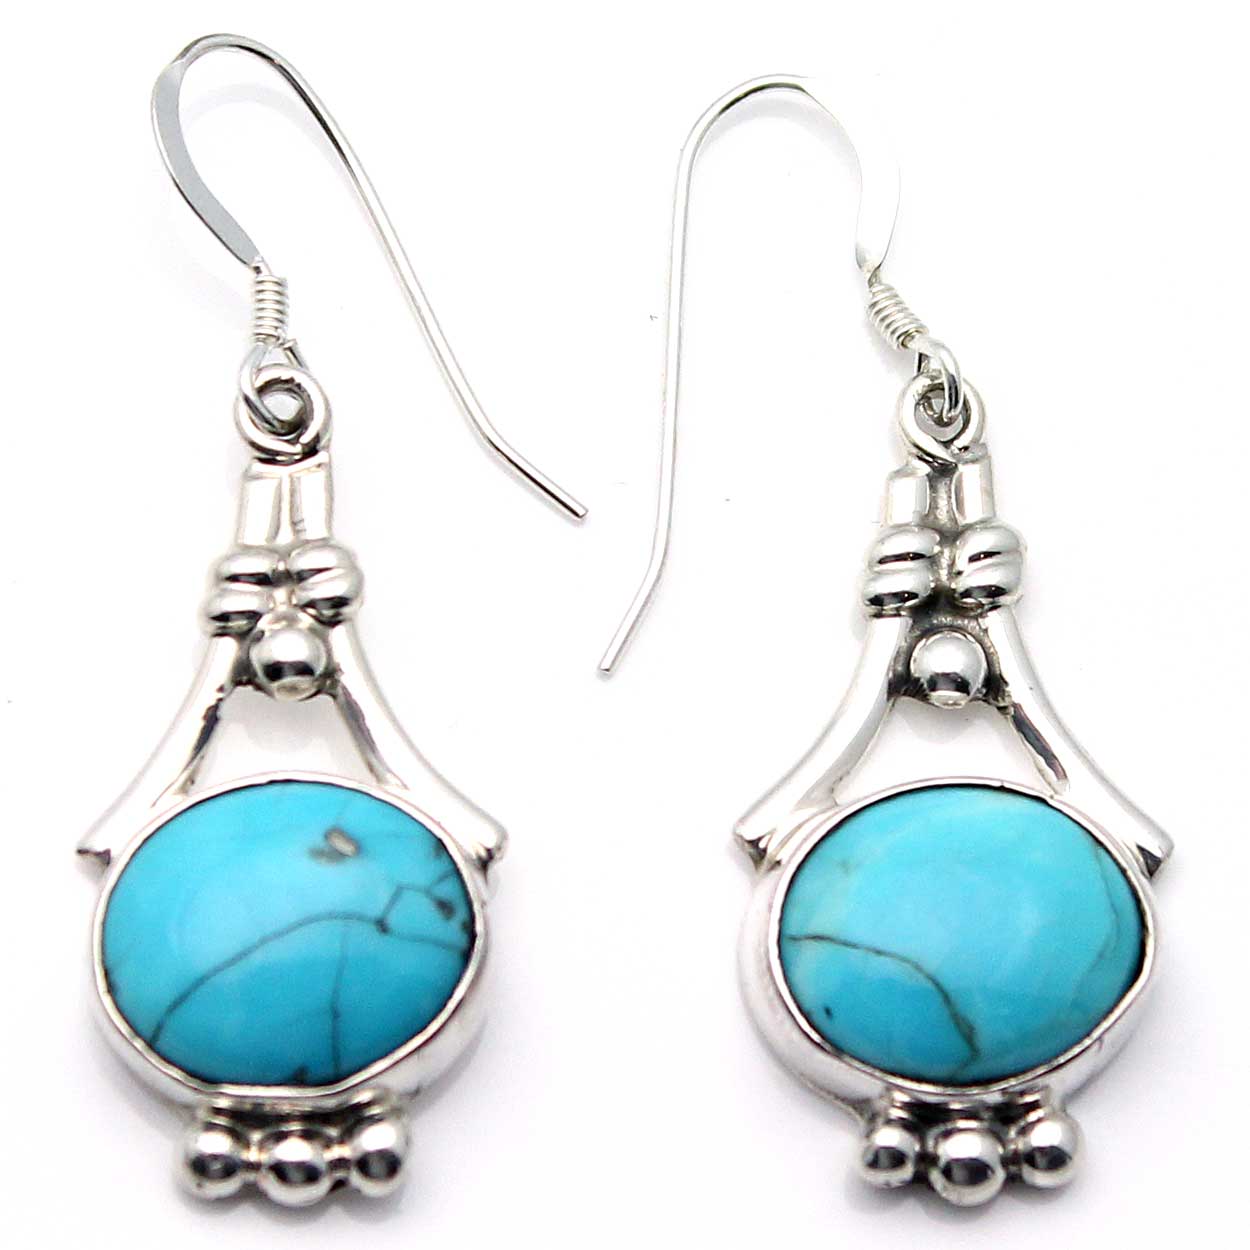 1" Turquoise Dangle Earrings